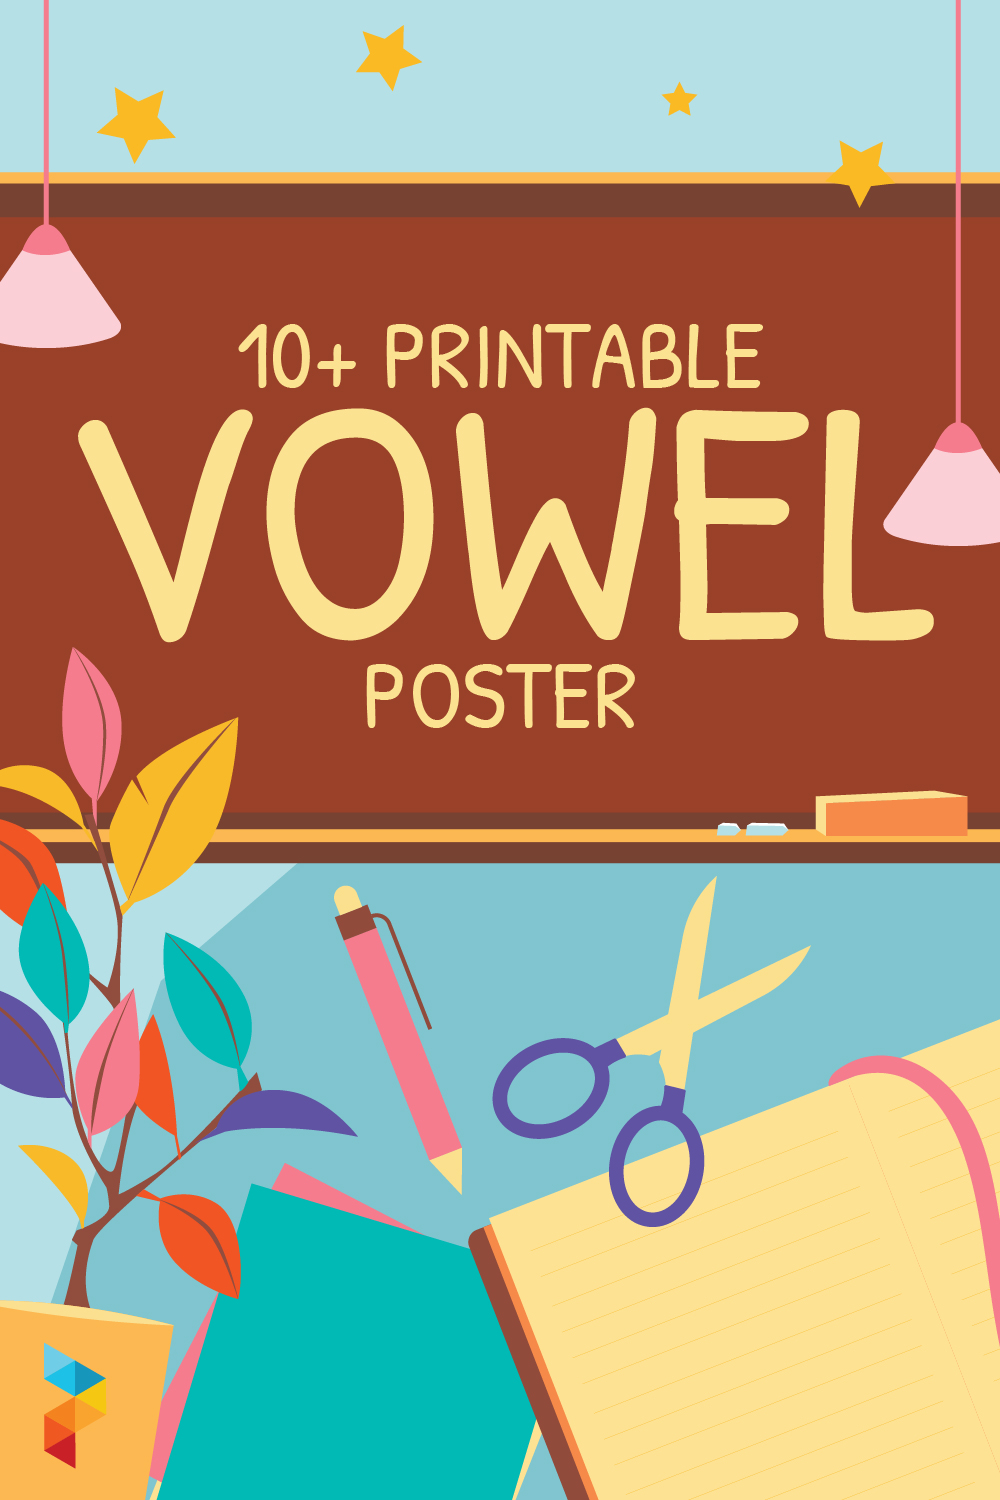 Vowel Poster